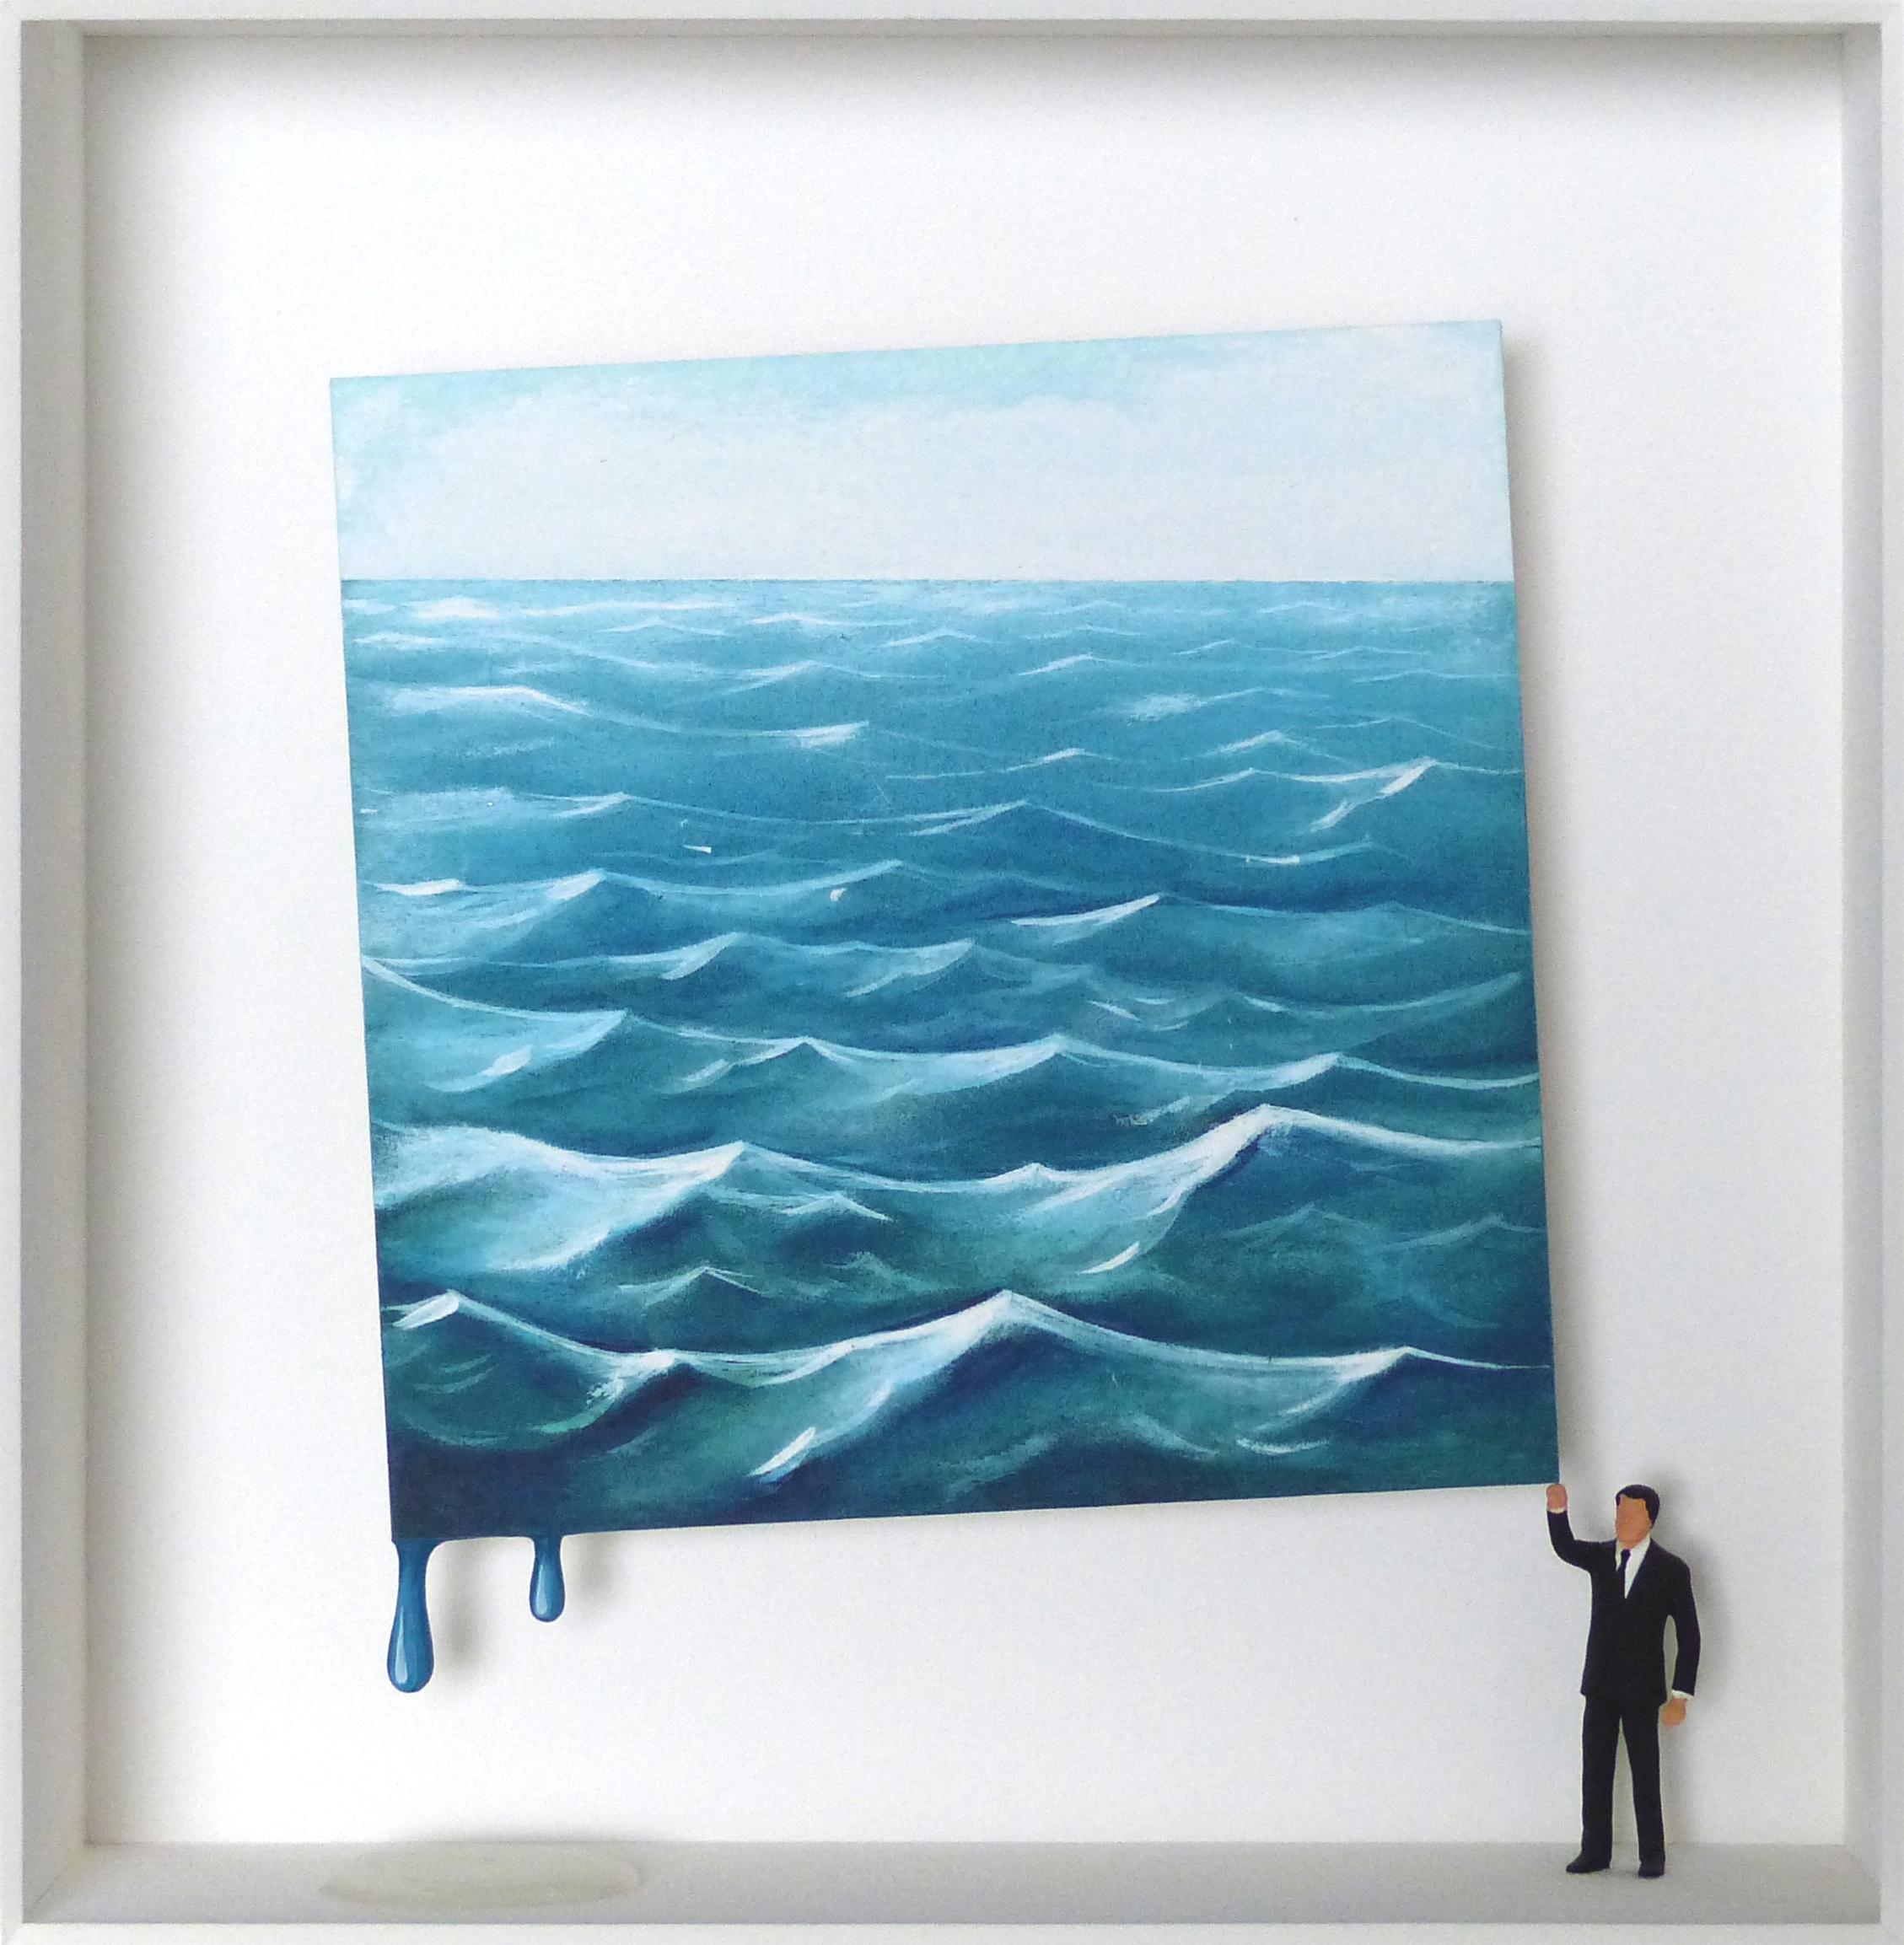 "The Roaring Waves" ist ein Original-Mixed-Media-Kunstwerk von Volker Kuhn mit einem surrealistischen Touch. Das Werk ist vom Künstler unterhalb des Bildes auf dem Passepartout handsigniert. 51 x 49 cm, gerahmt in einem silbernen Holzrahmen mit